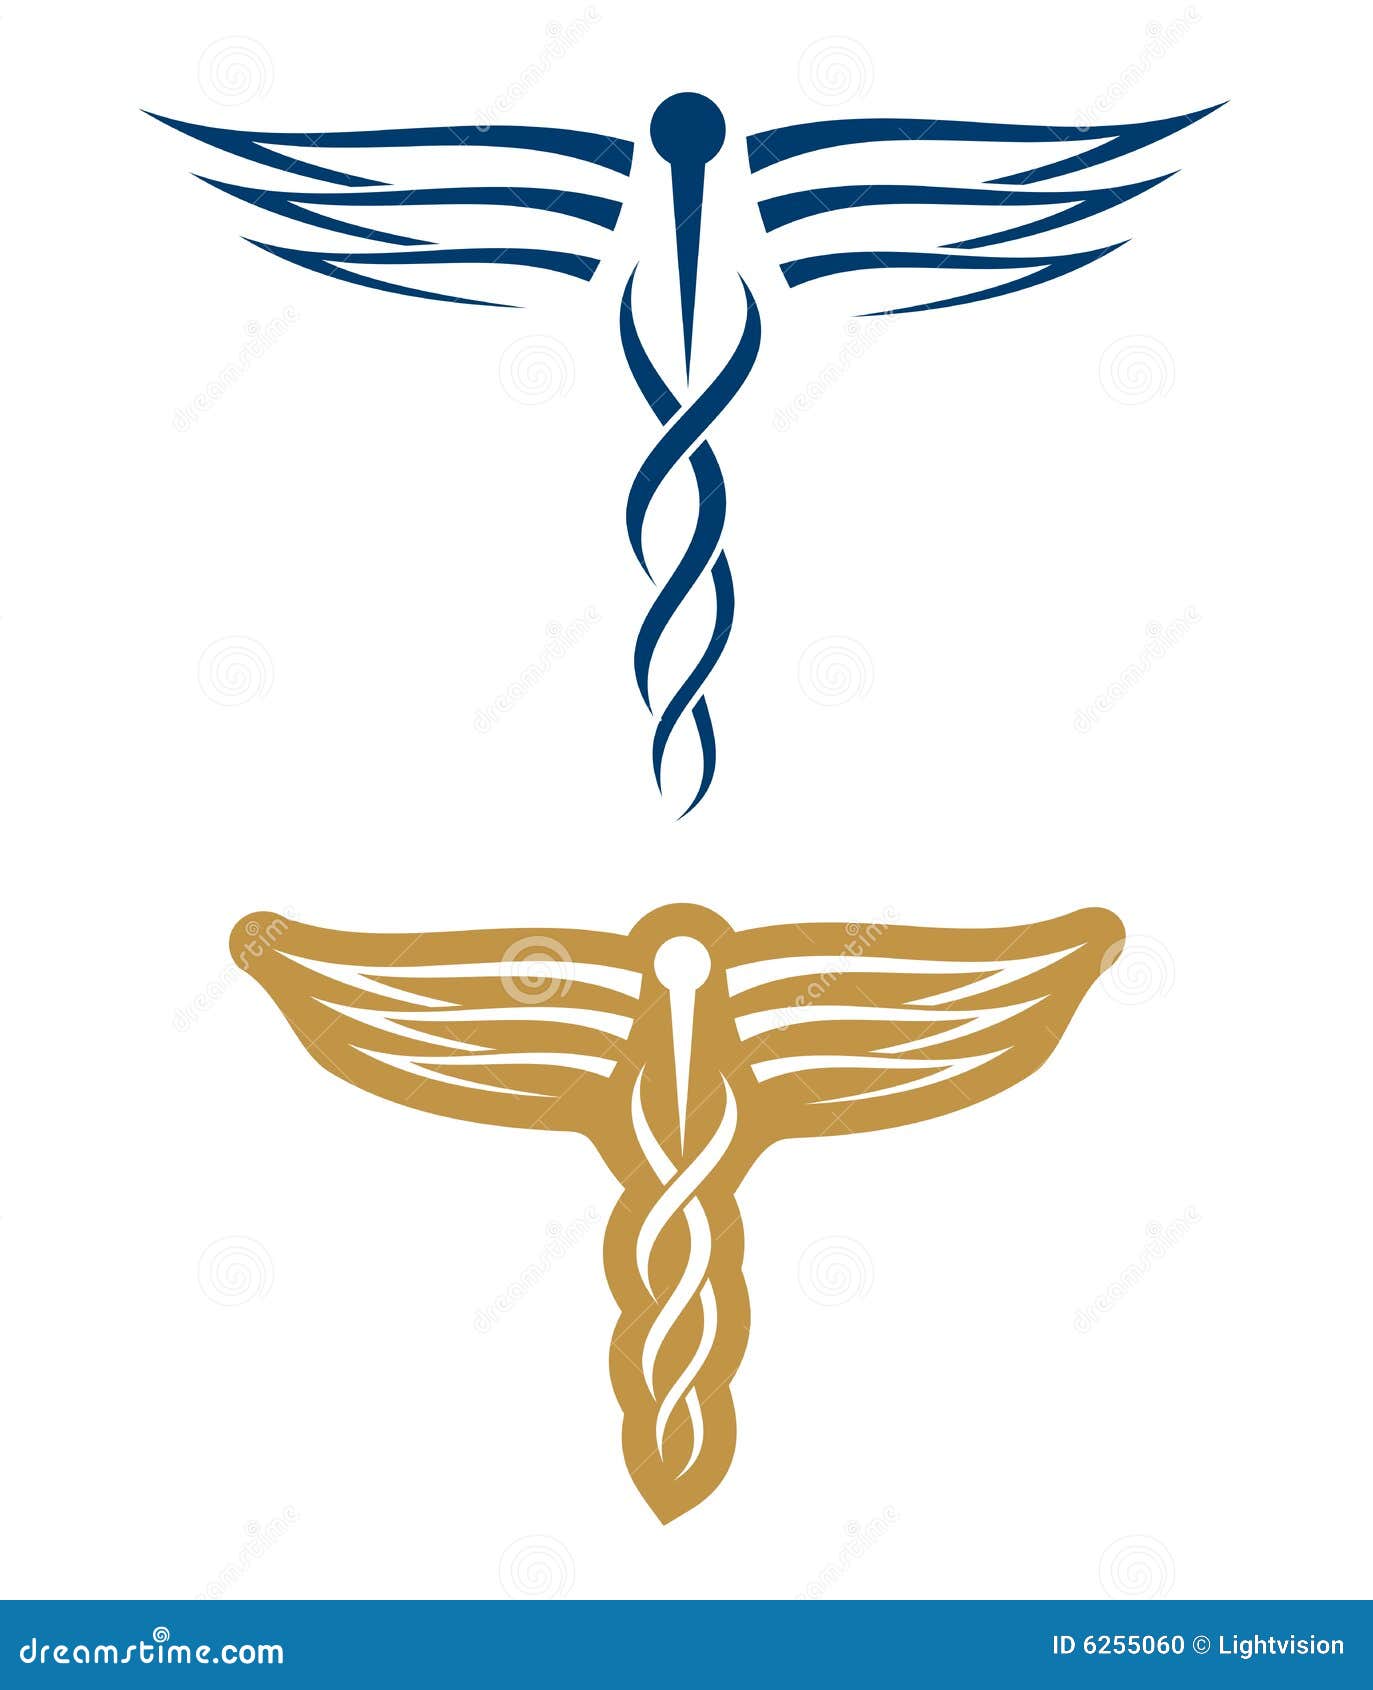 medical-logos-6255060.jpg